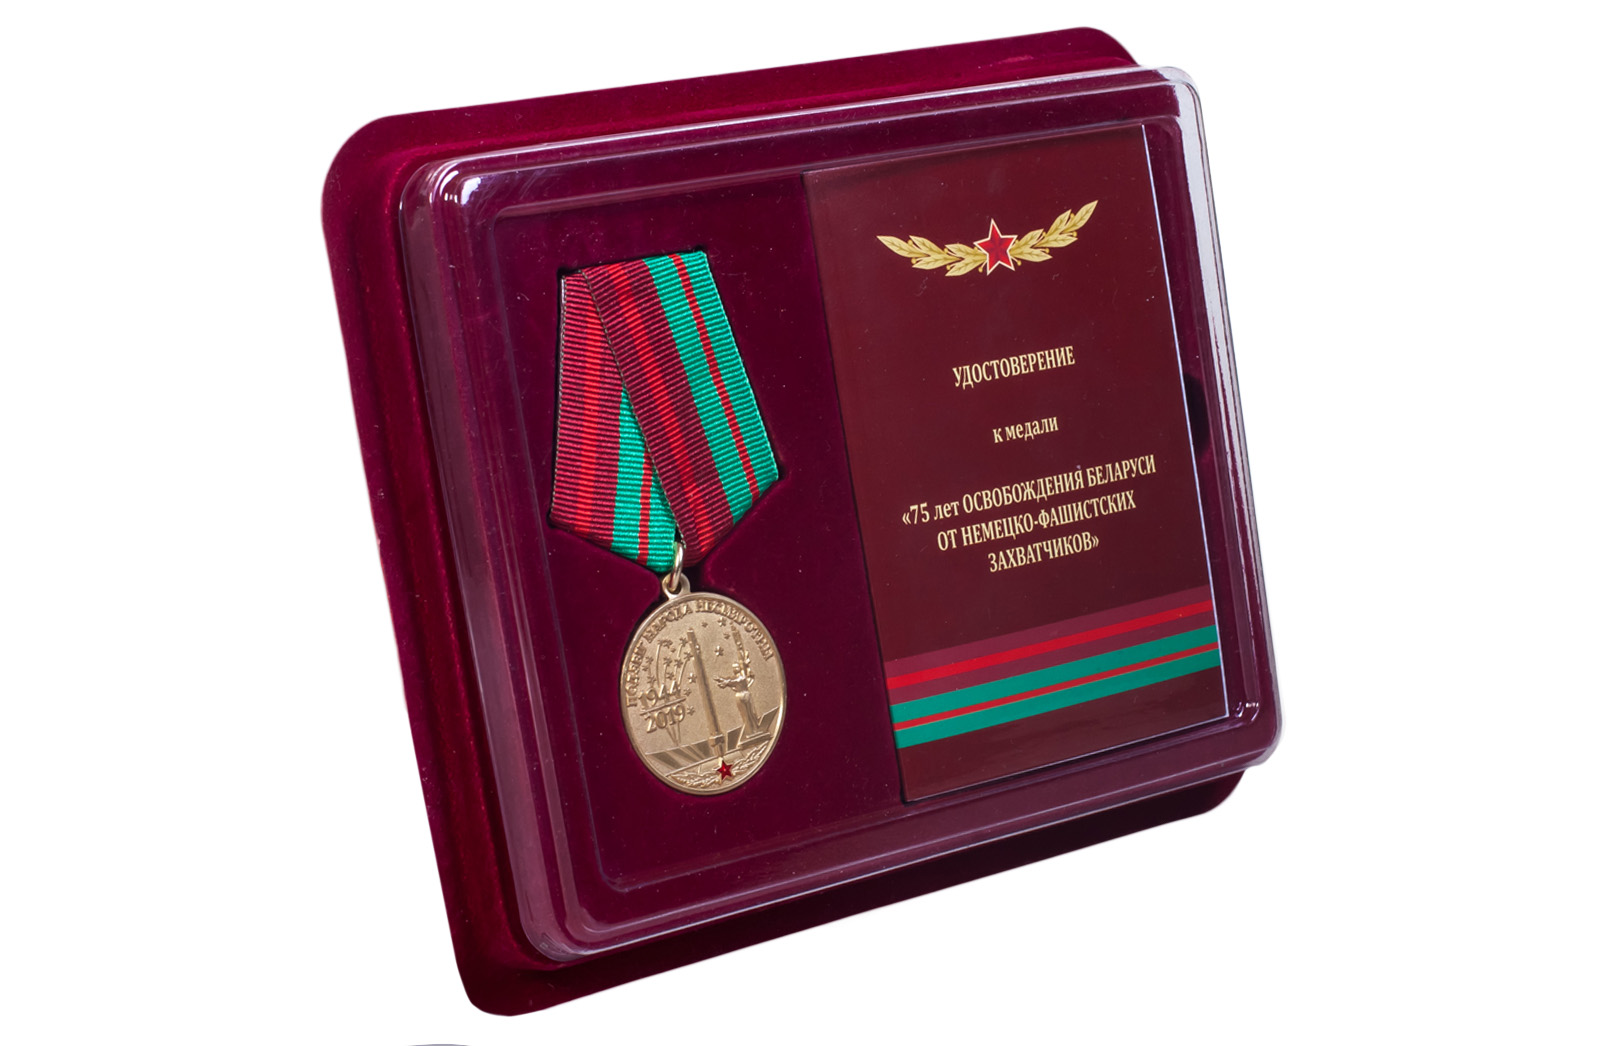 Купить латунную медаль 75 лет освобождения Беларуси от немецко-фашистских захватчиков онлайн